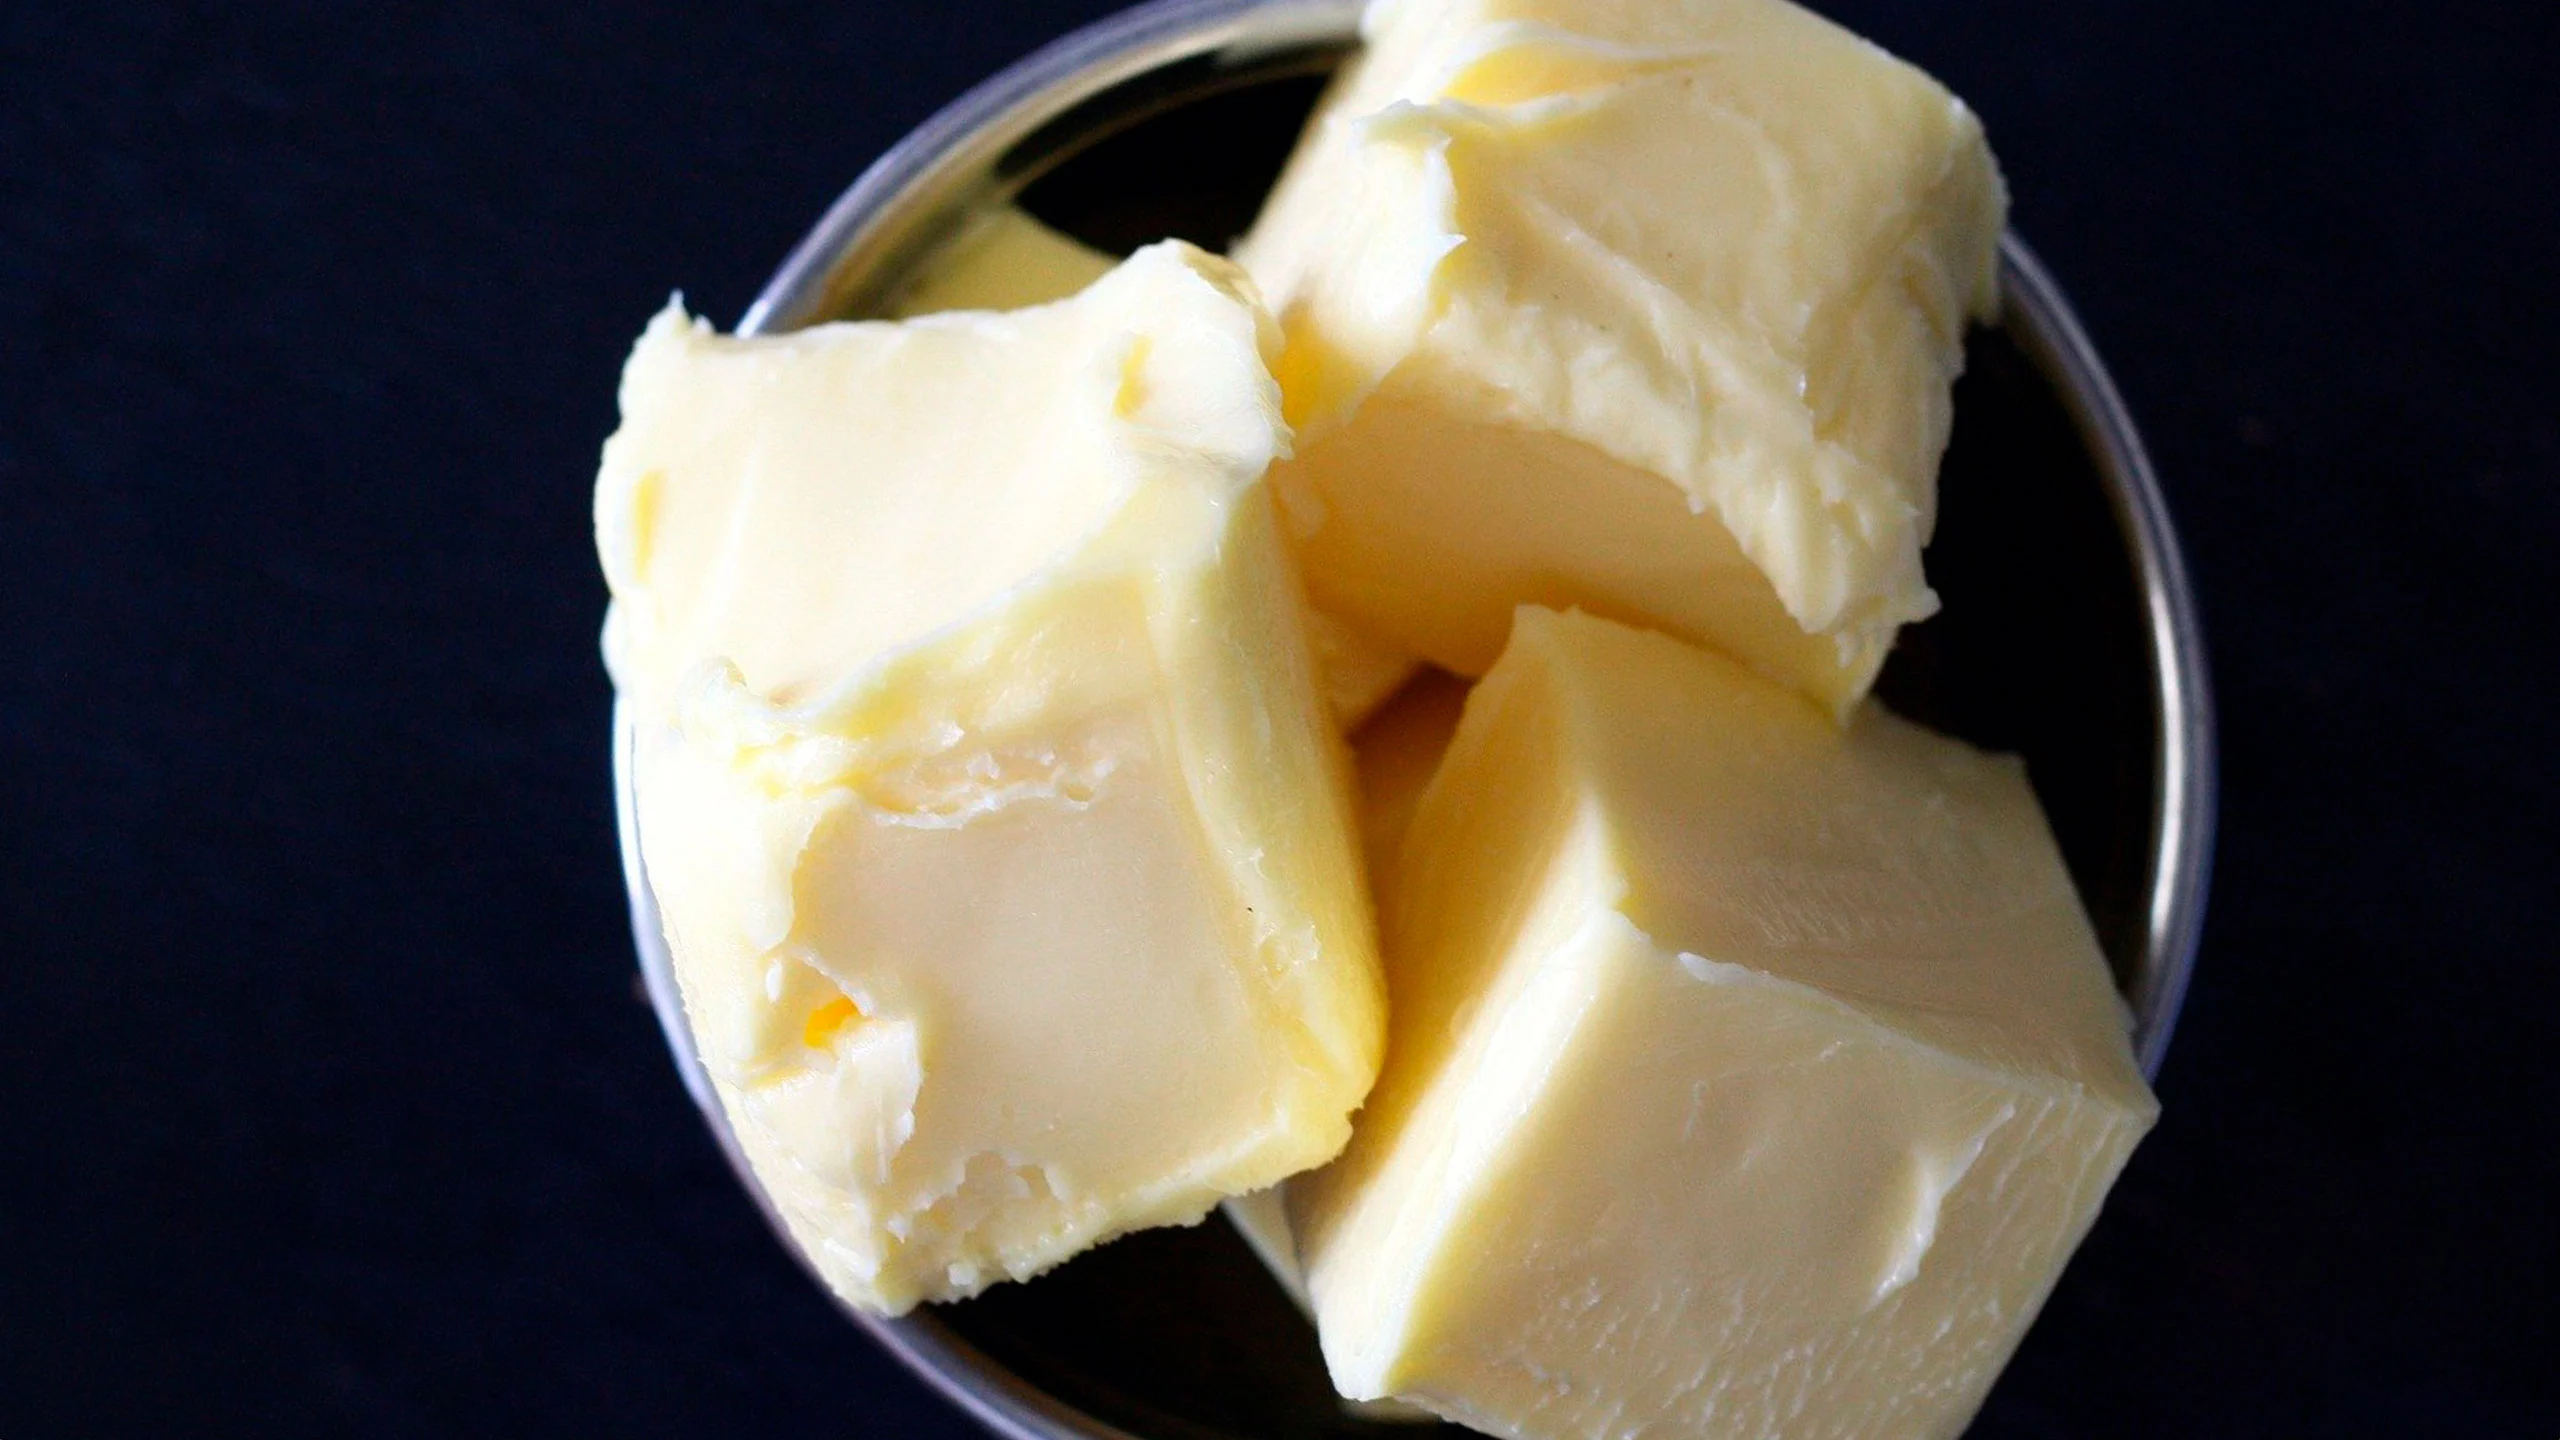 Profeco alerta sobre tres mantequillas falsas en el mercado